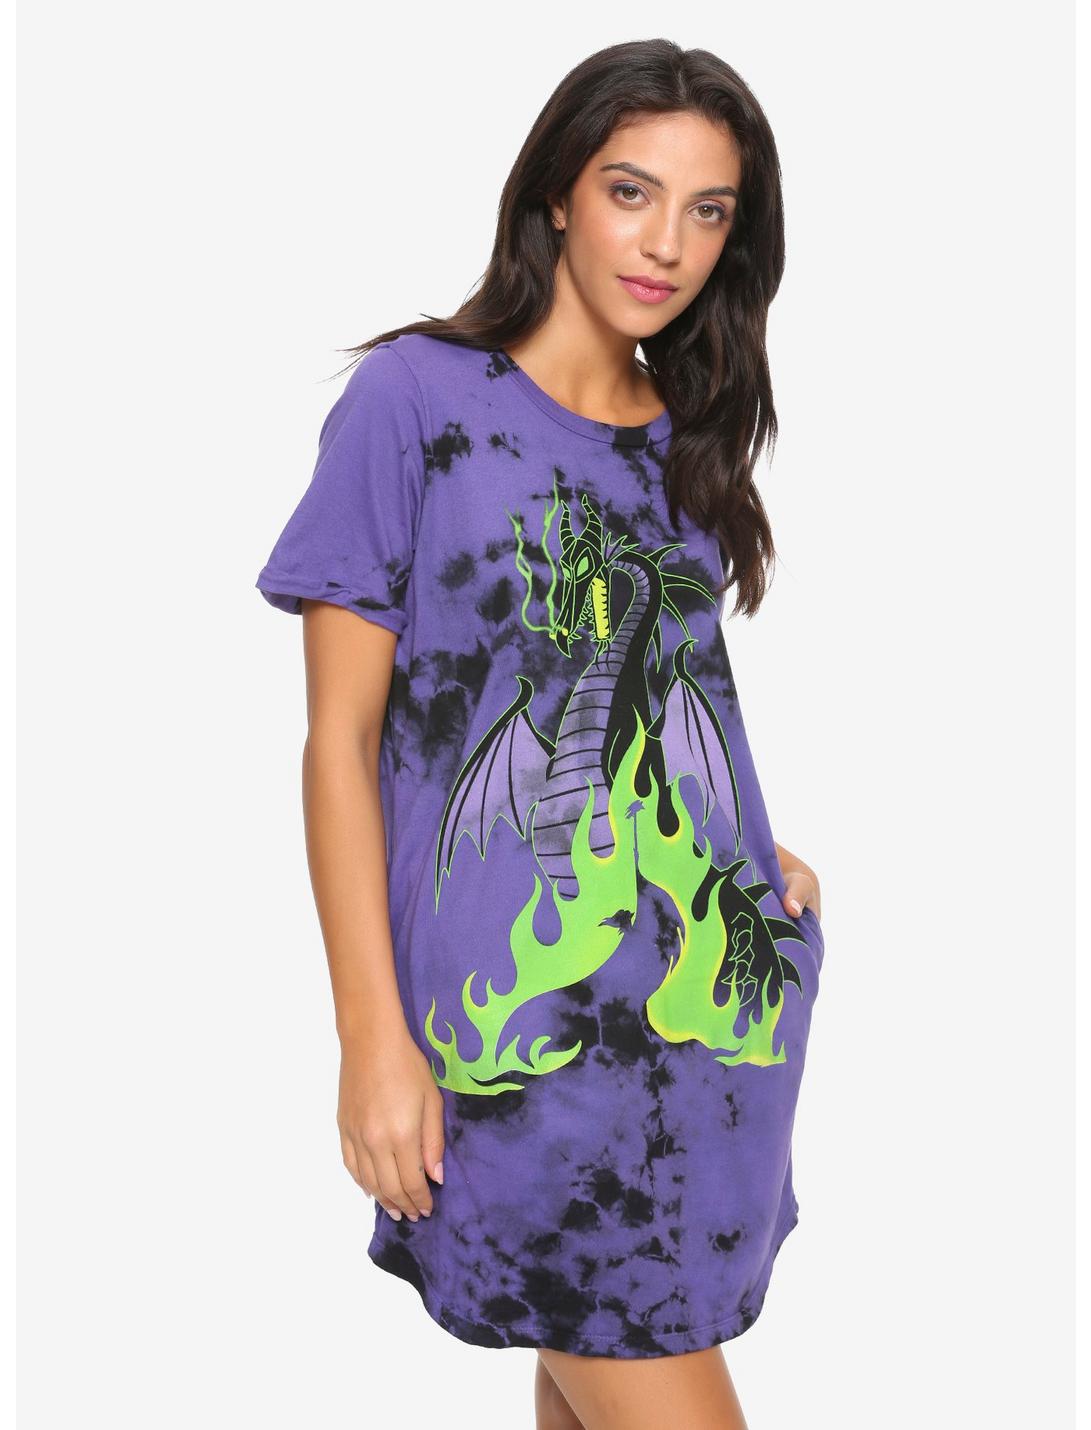 Disney Sleeping Beauty Maleficent Tie-Dye T-Shirt Dress, TIE DYE, hi-res